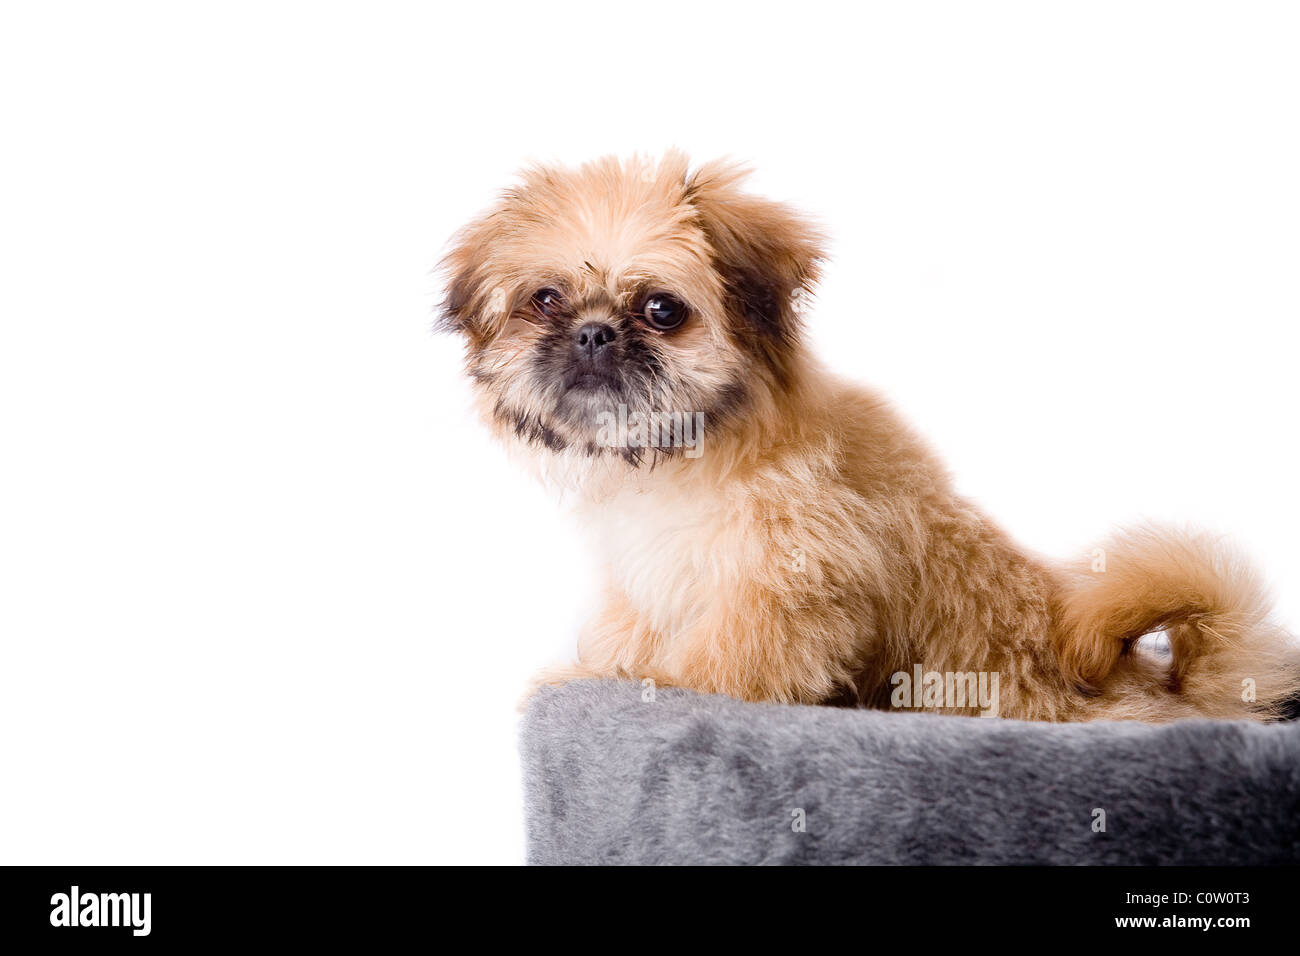 Cute little pekingese dog isolated on white Stock Photo